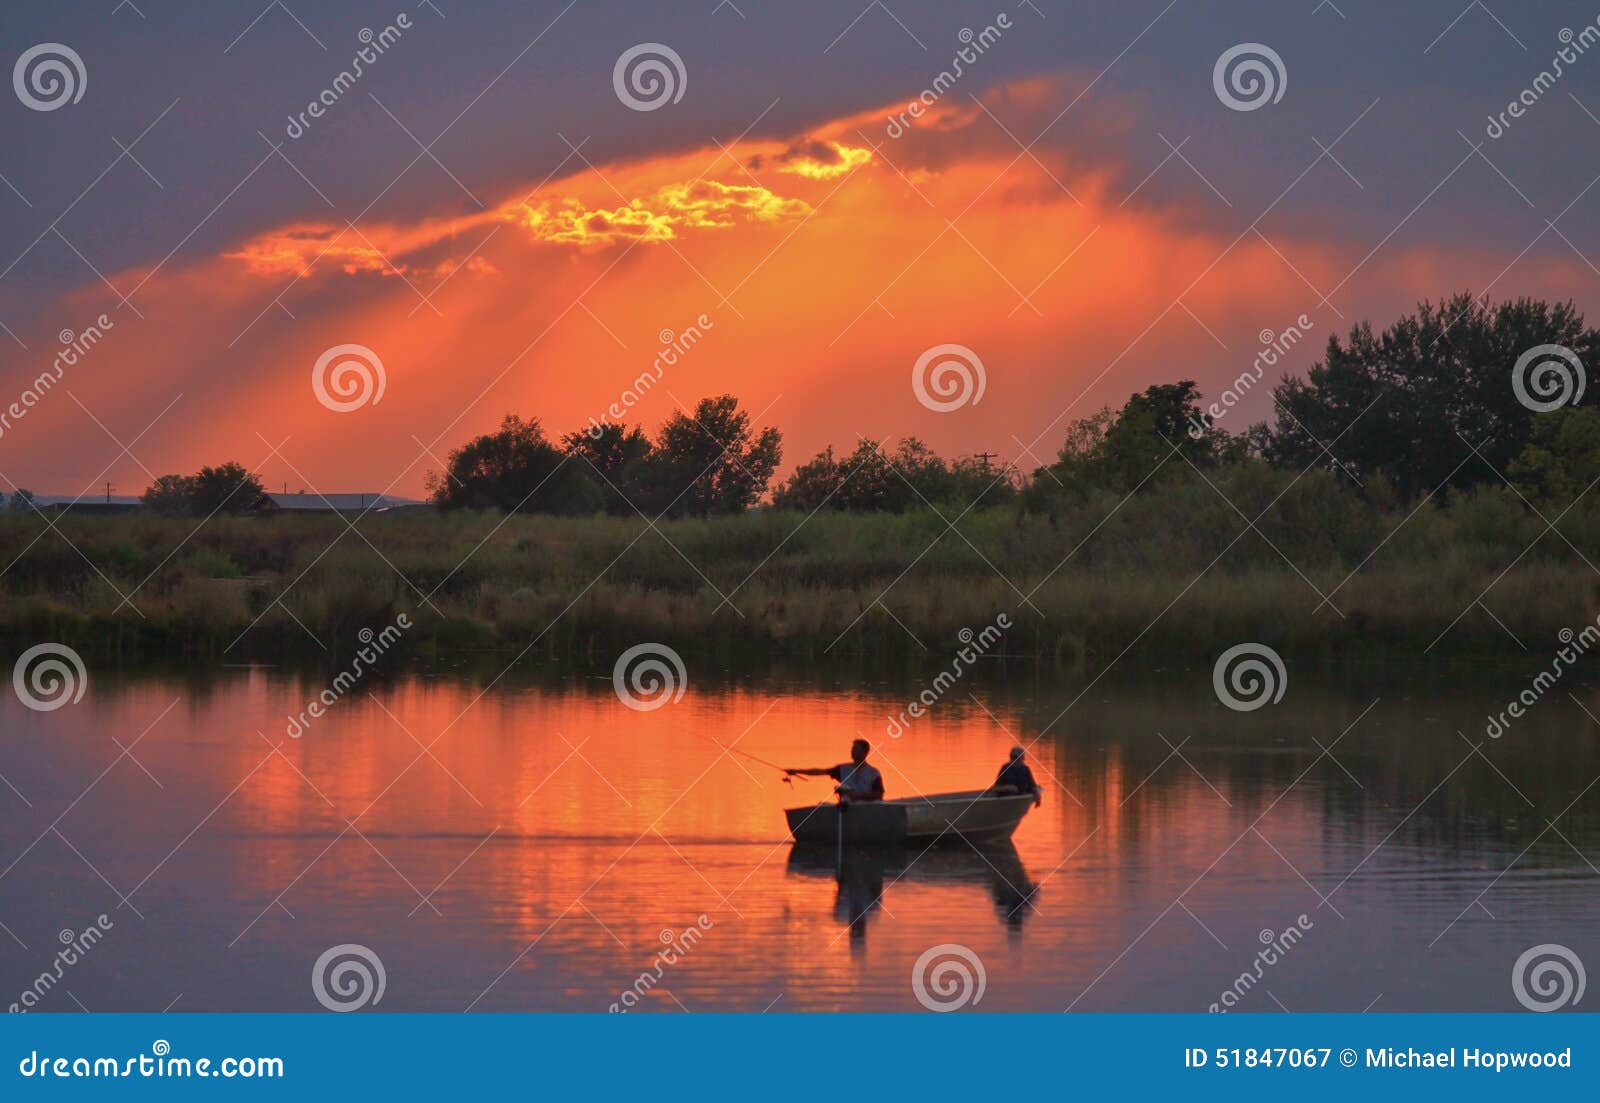 Łowić na spokojnym wieczór. Dwa rybaka w łódkowatym połowie jako słońce ustawiają